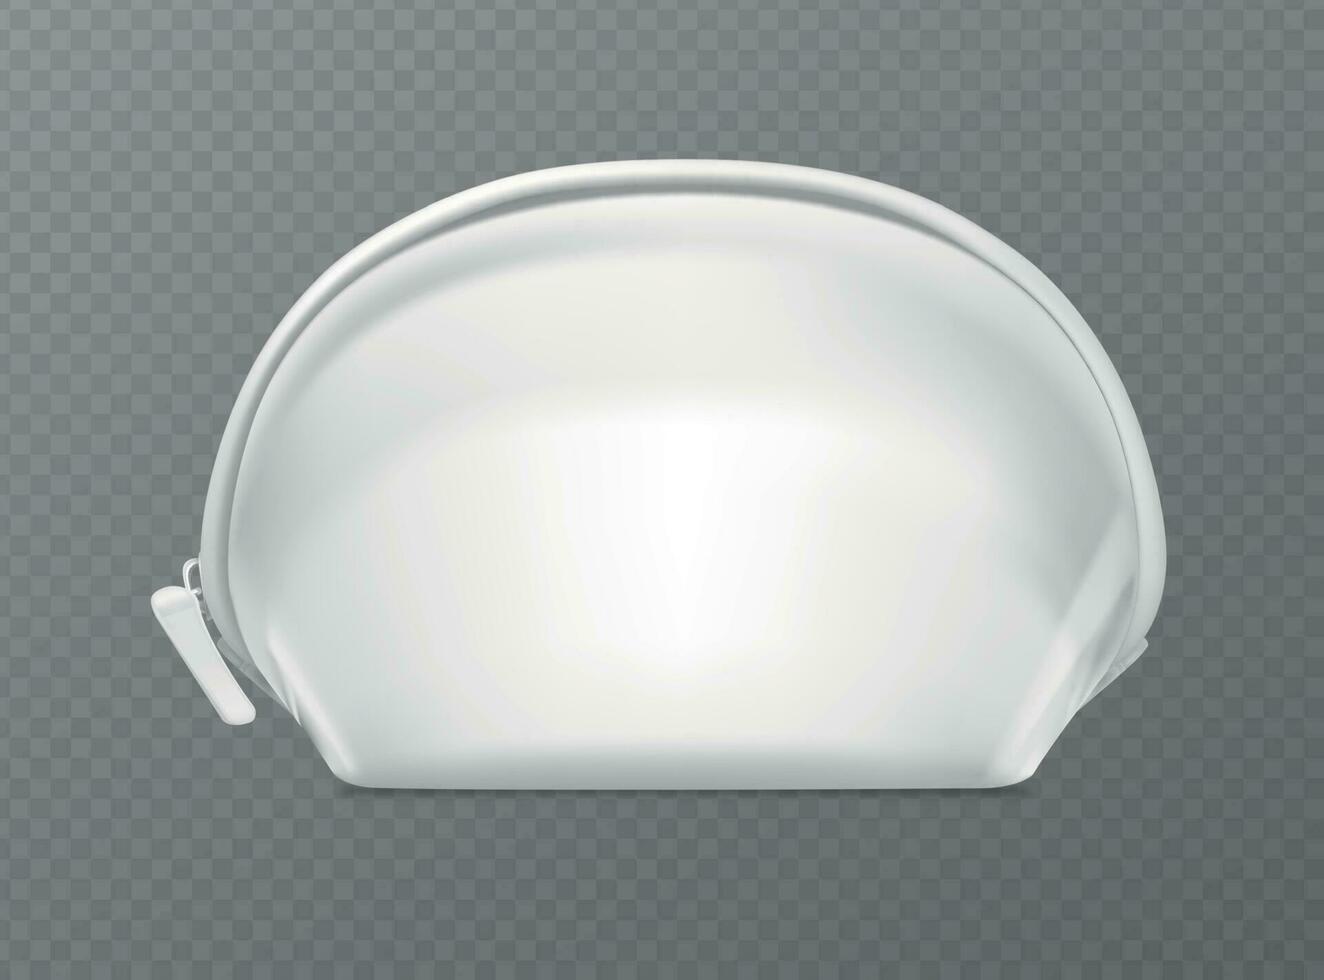 realistisch gedetailleerd 3d wit blanco kunstmatig zak rits. vector illustratie